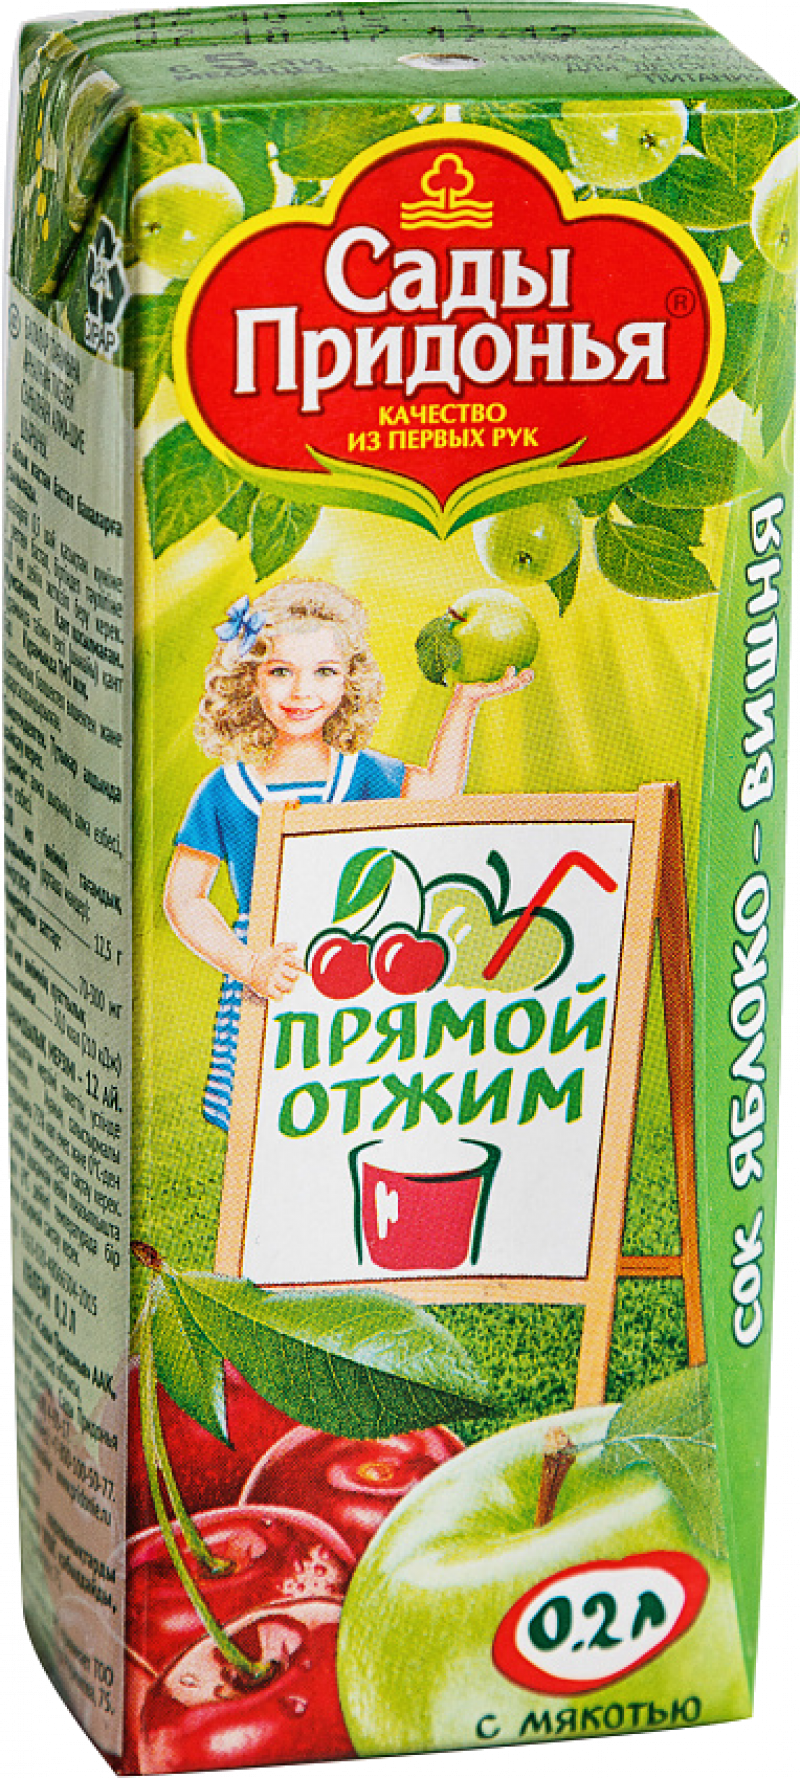 Сок 0,2л Сады Придонья сок яблочно-вишневый прямого отжима с мяк